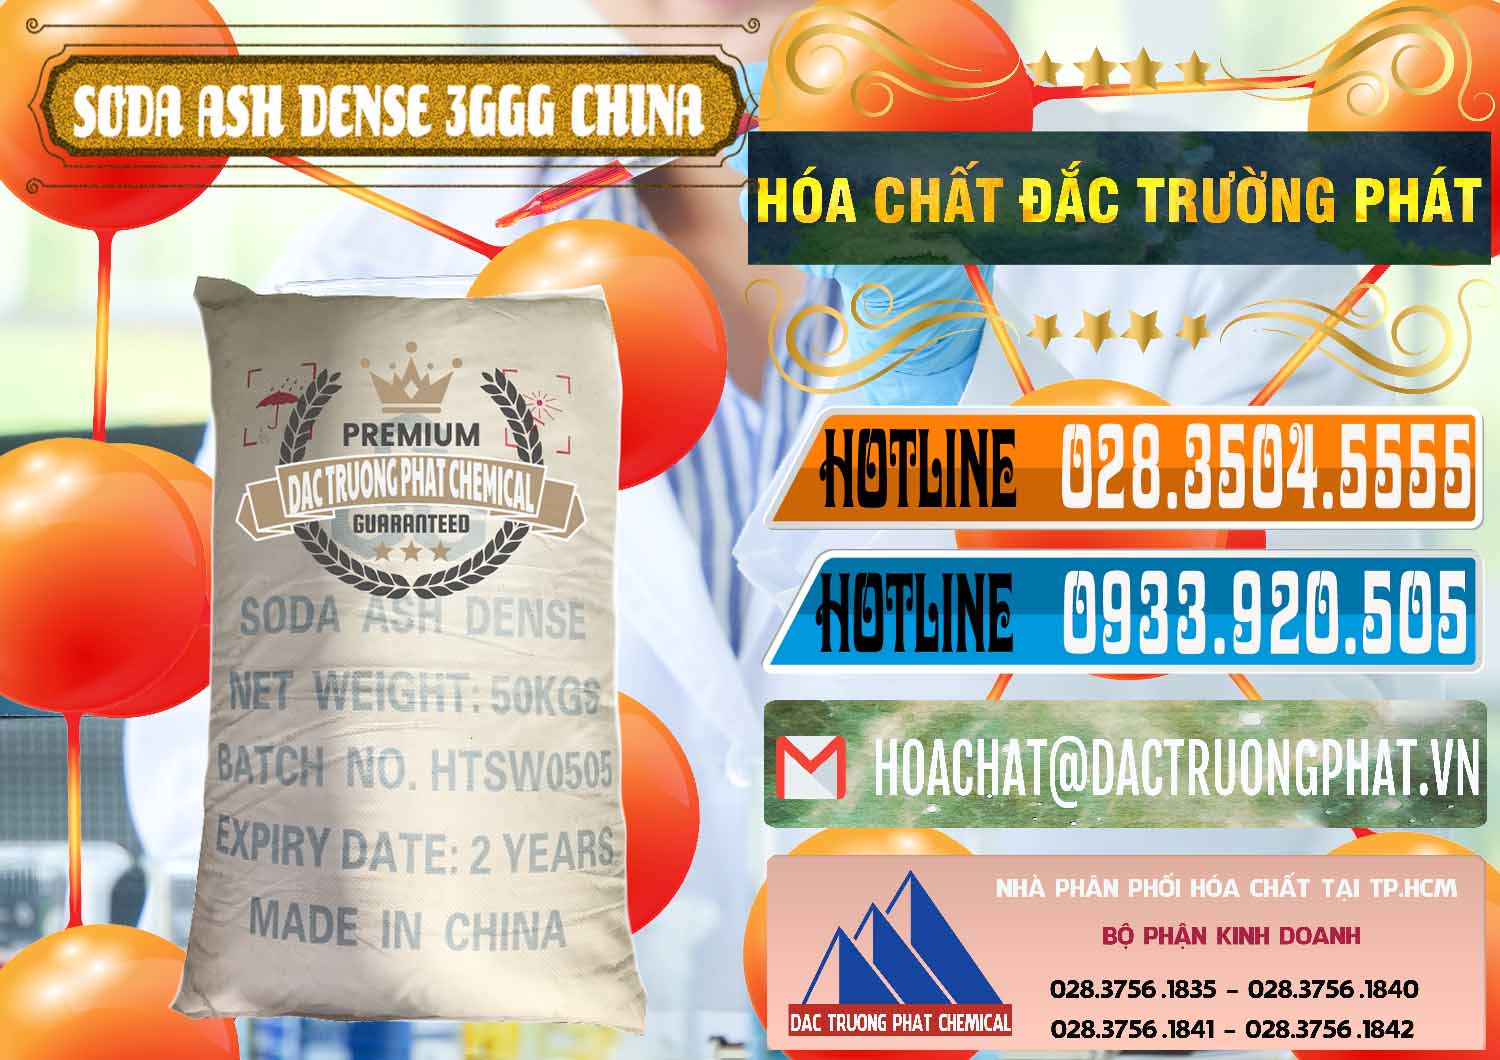 Nơi chuyên bán ( cung cấp ) Soda Ash Dense - NA2CO3 3GGG Trung Quốc China - 0335 - Cty cung cấp - phân phối hóa chất tại TP.HCM - stmp.net